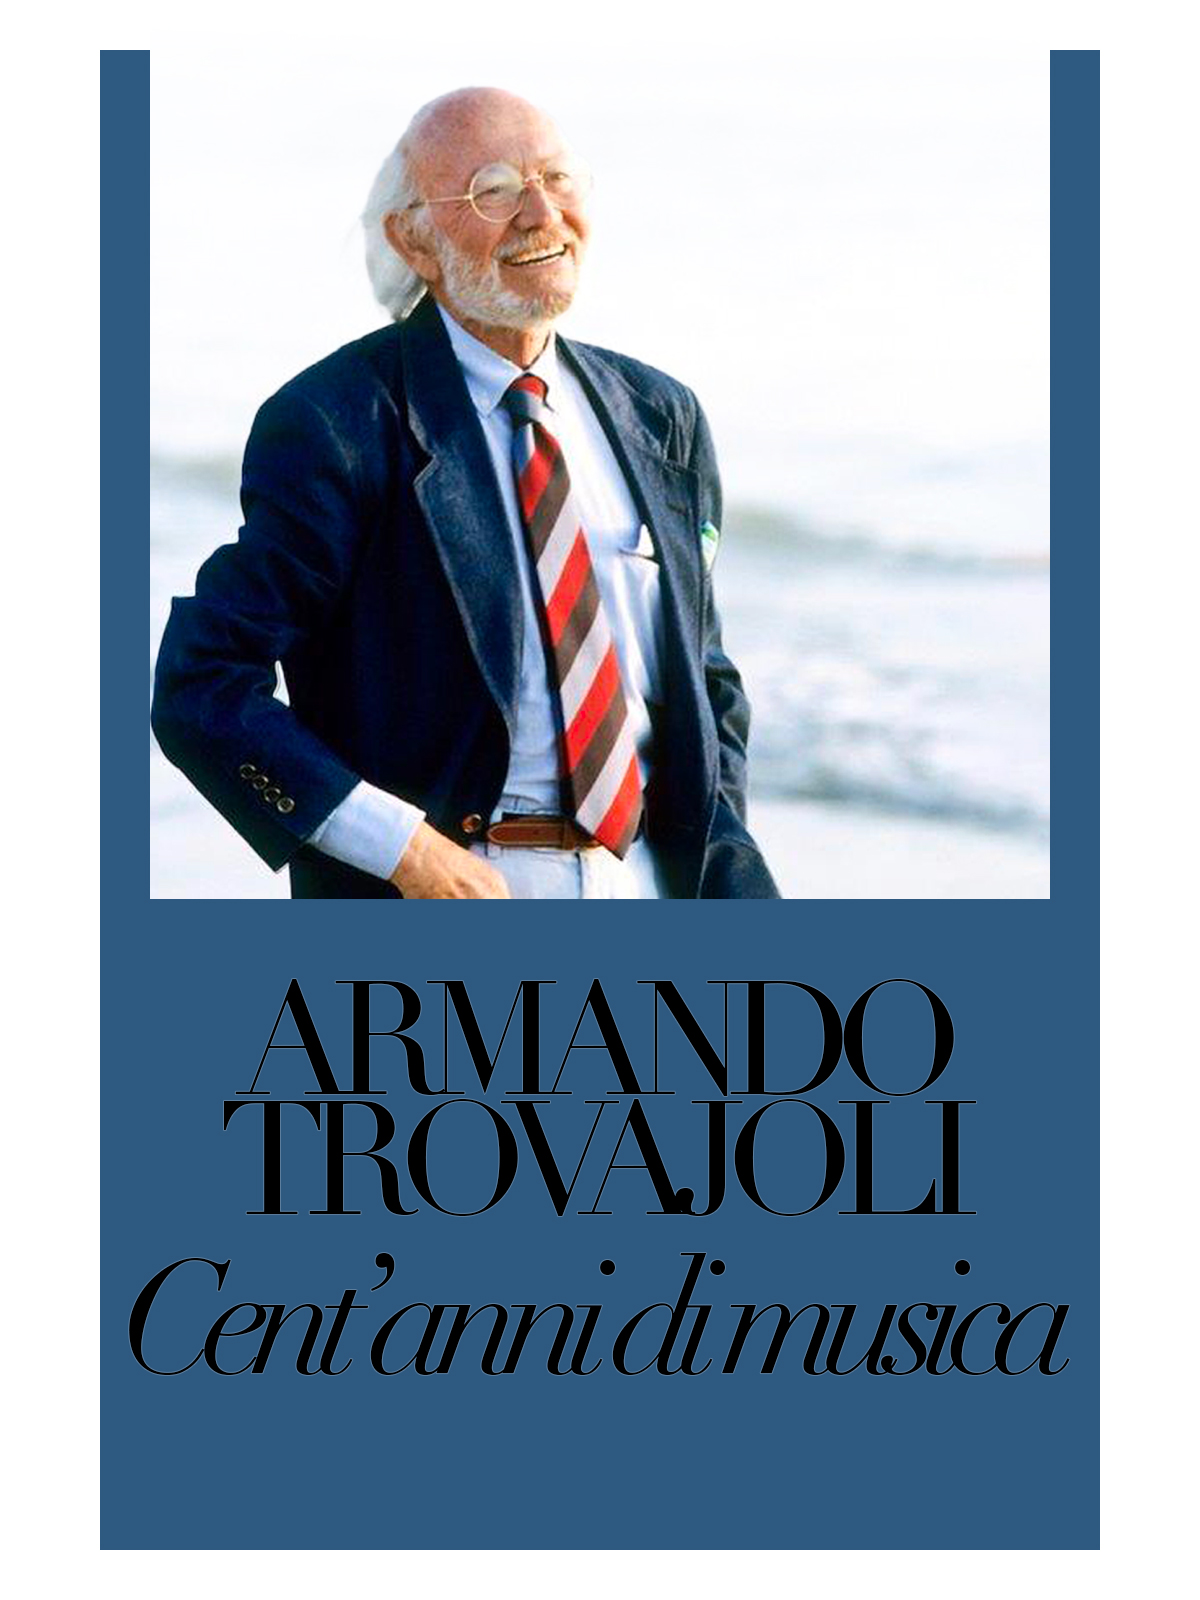 ARMANDO TROVAJOLI: CENT’ANNI DI MUSICA